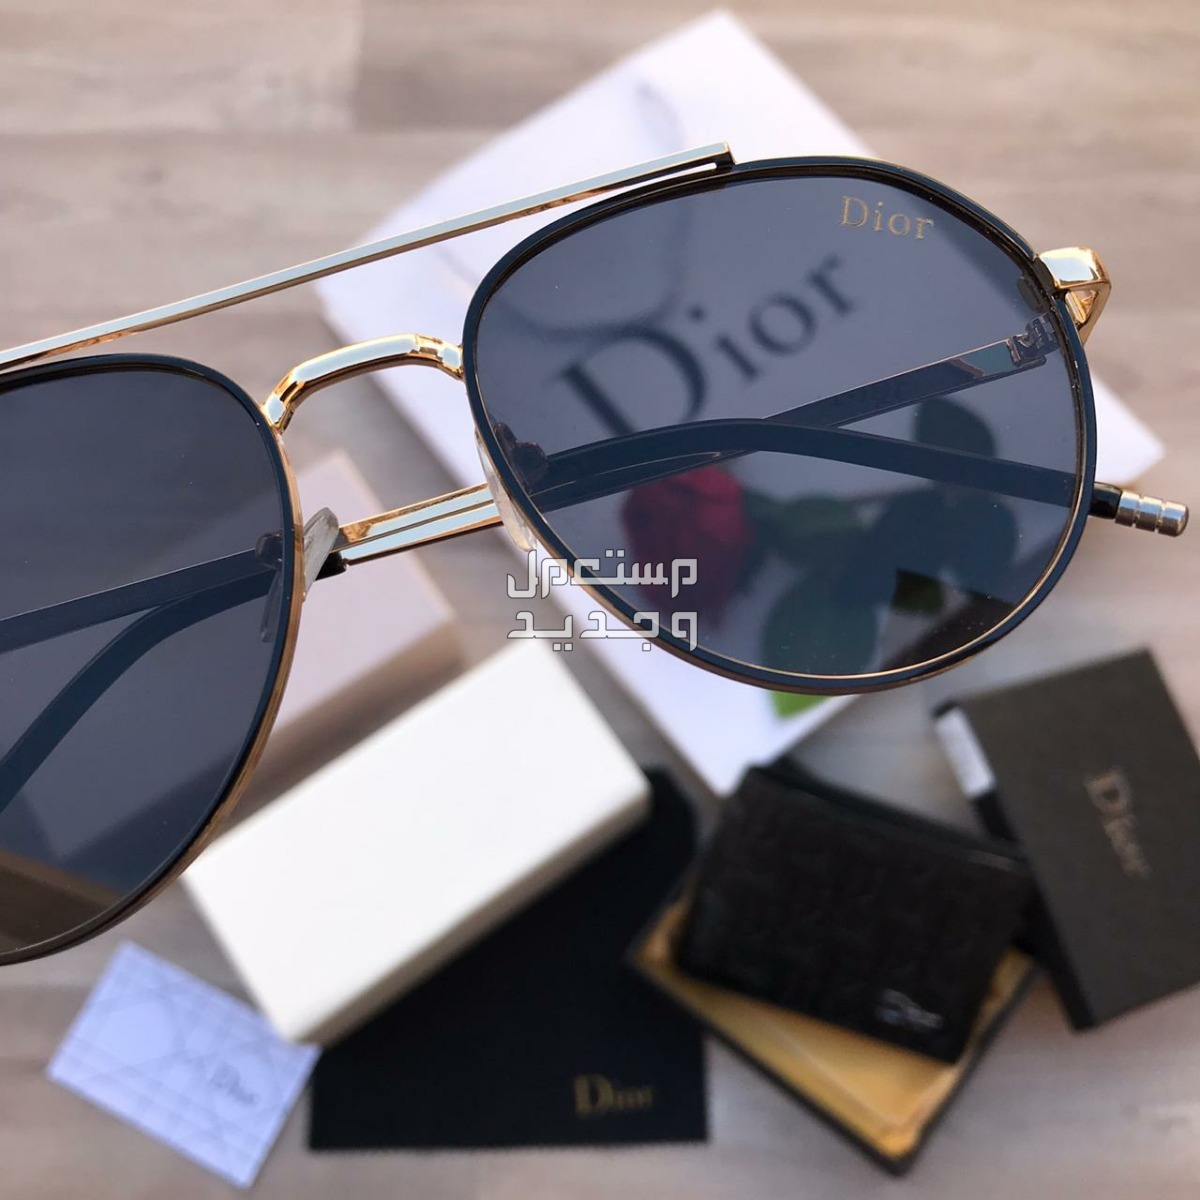 نظارة ديور مع محفظة الماركة والملحقات